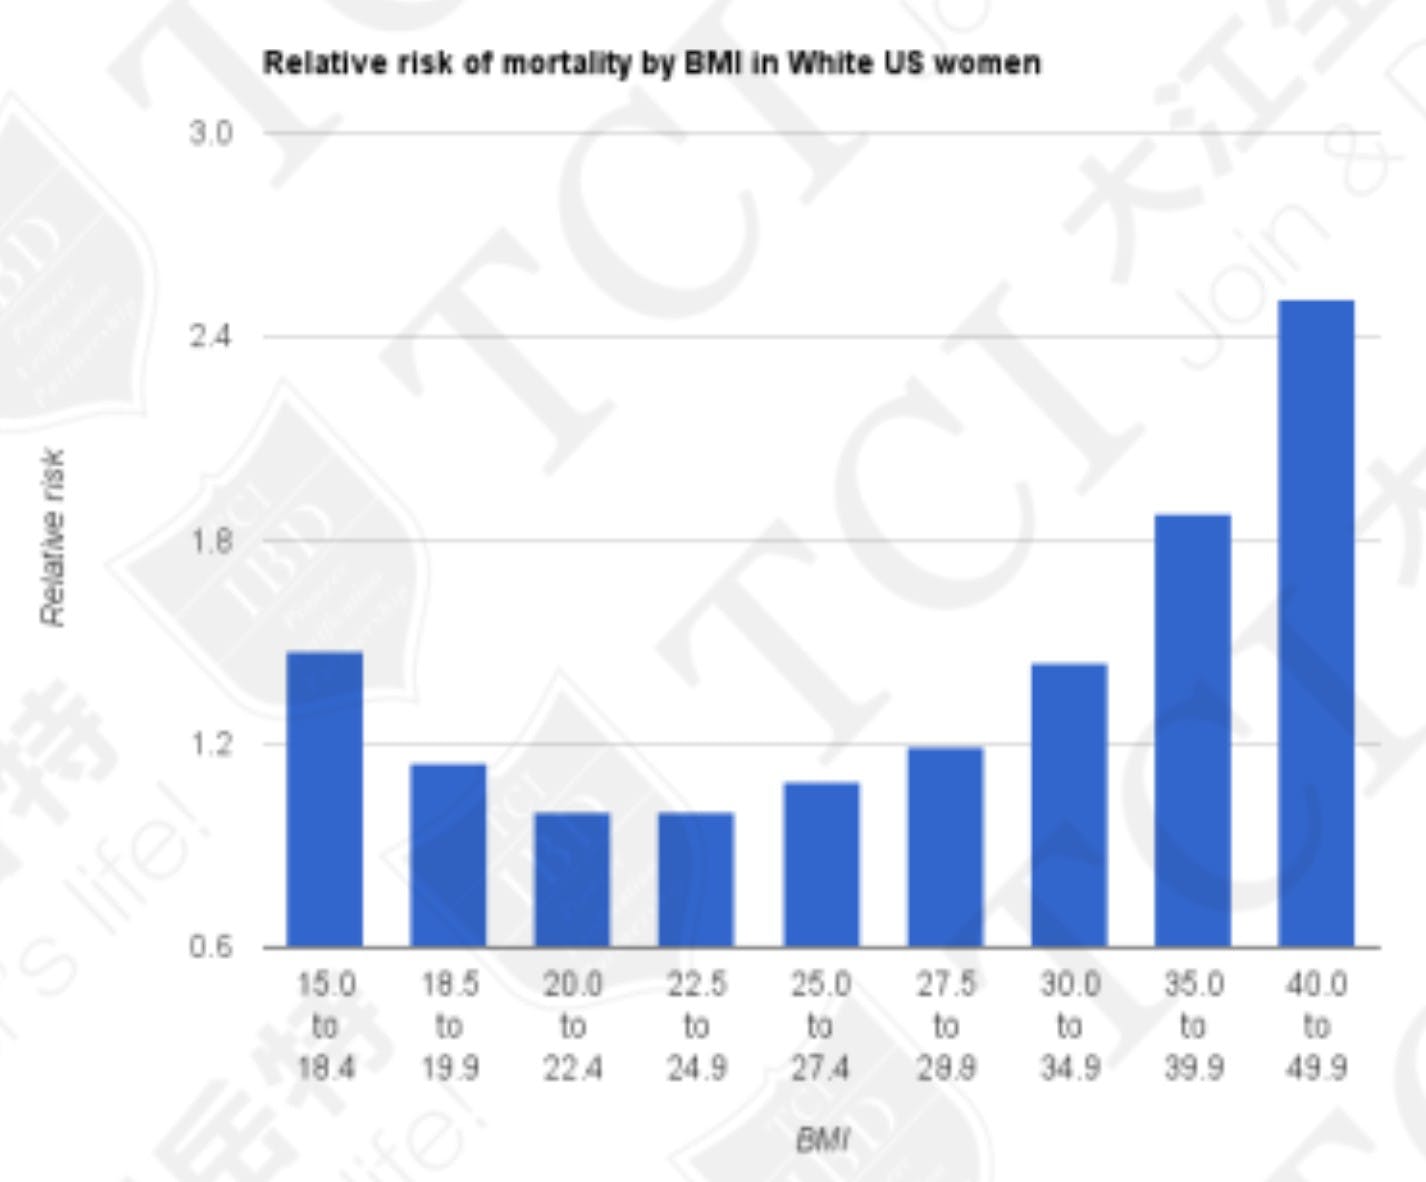 美國不同BMI的未吸菸女性十年 內死亡的相對風険 資料來源:維基百科